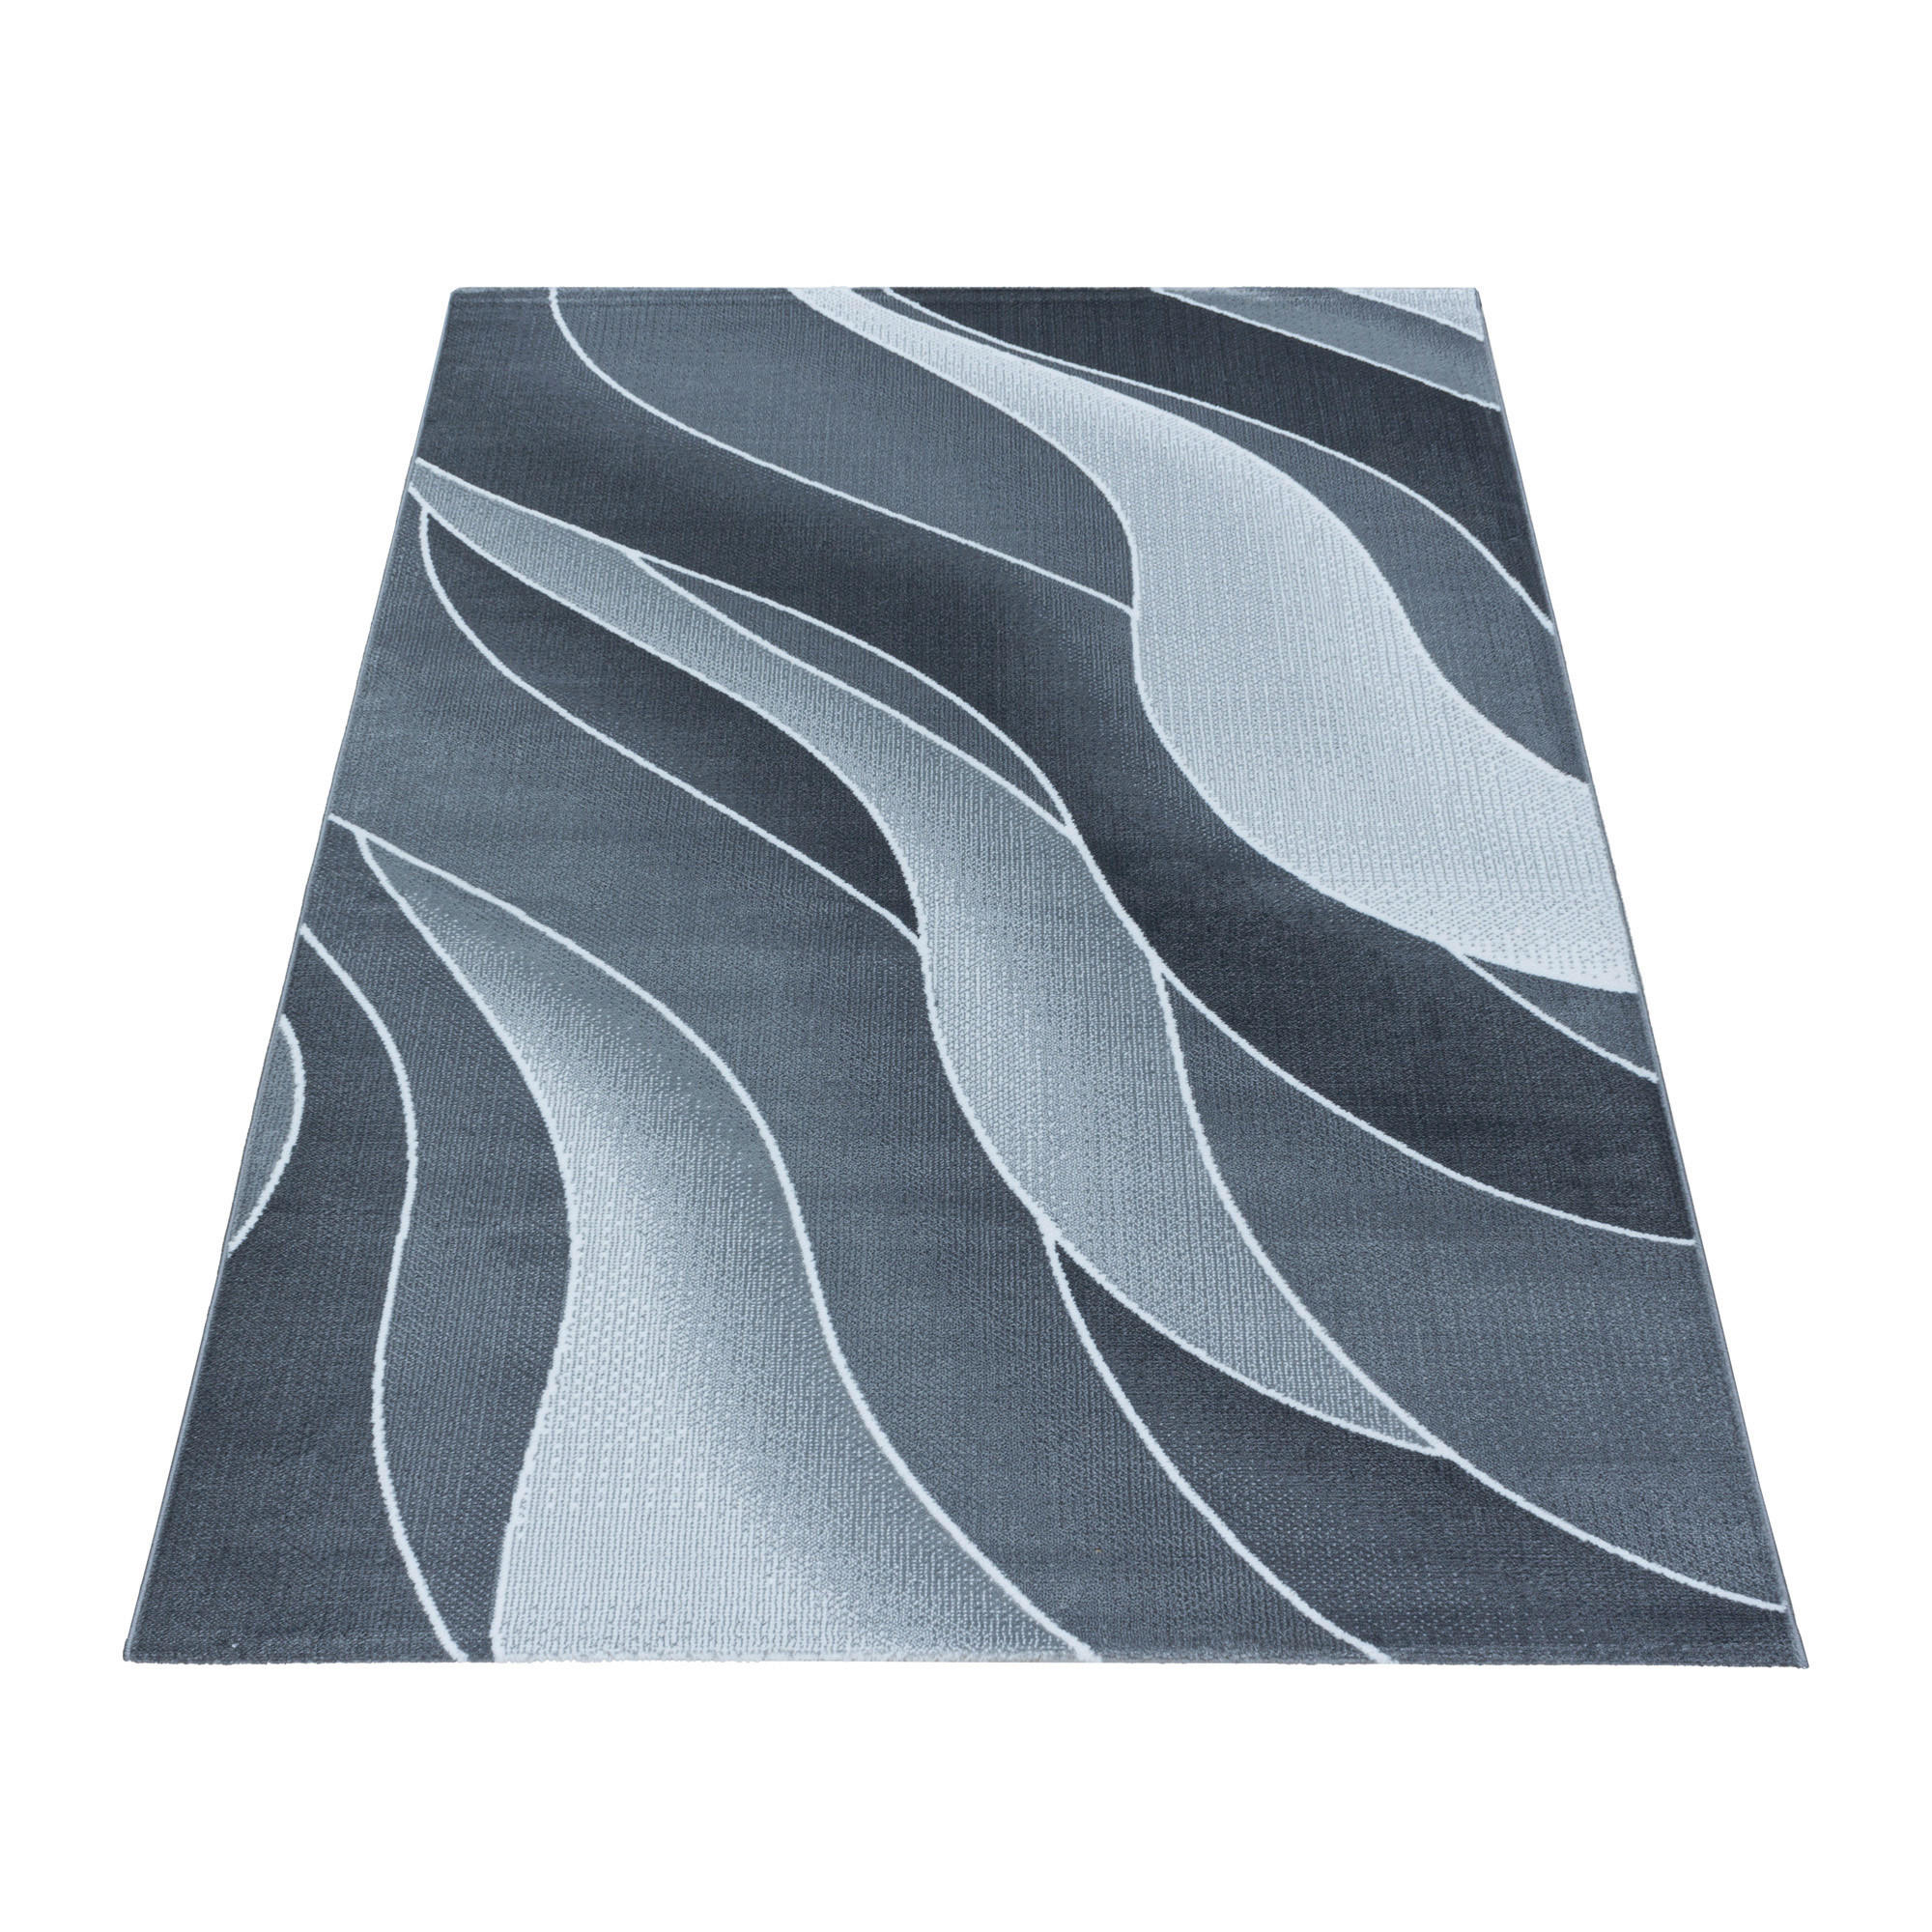 WEBTEPPICH  140/200 cm  Grau   - Grau, Design, Textil (140/200cm) - Novel